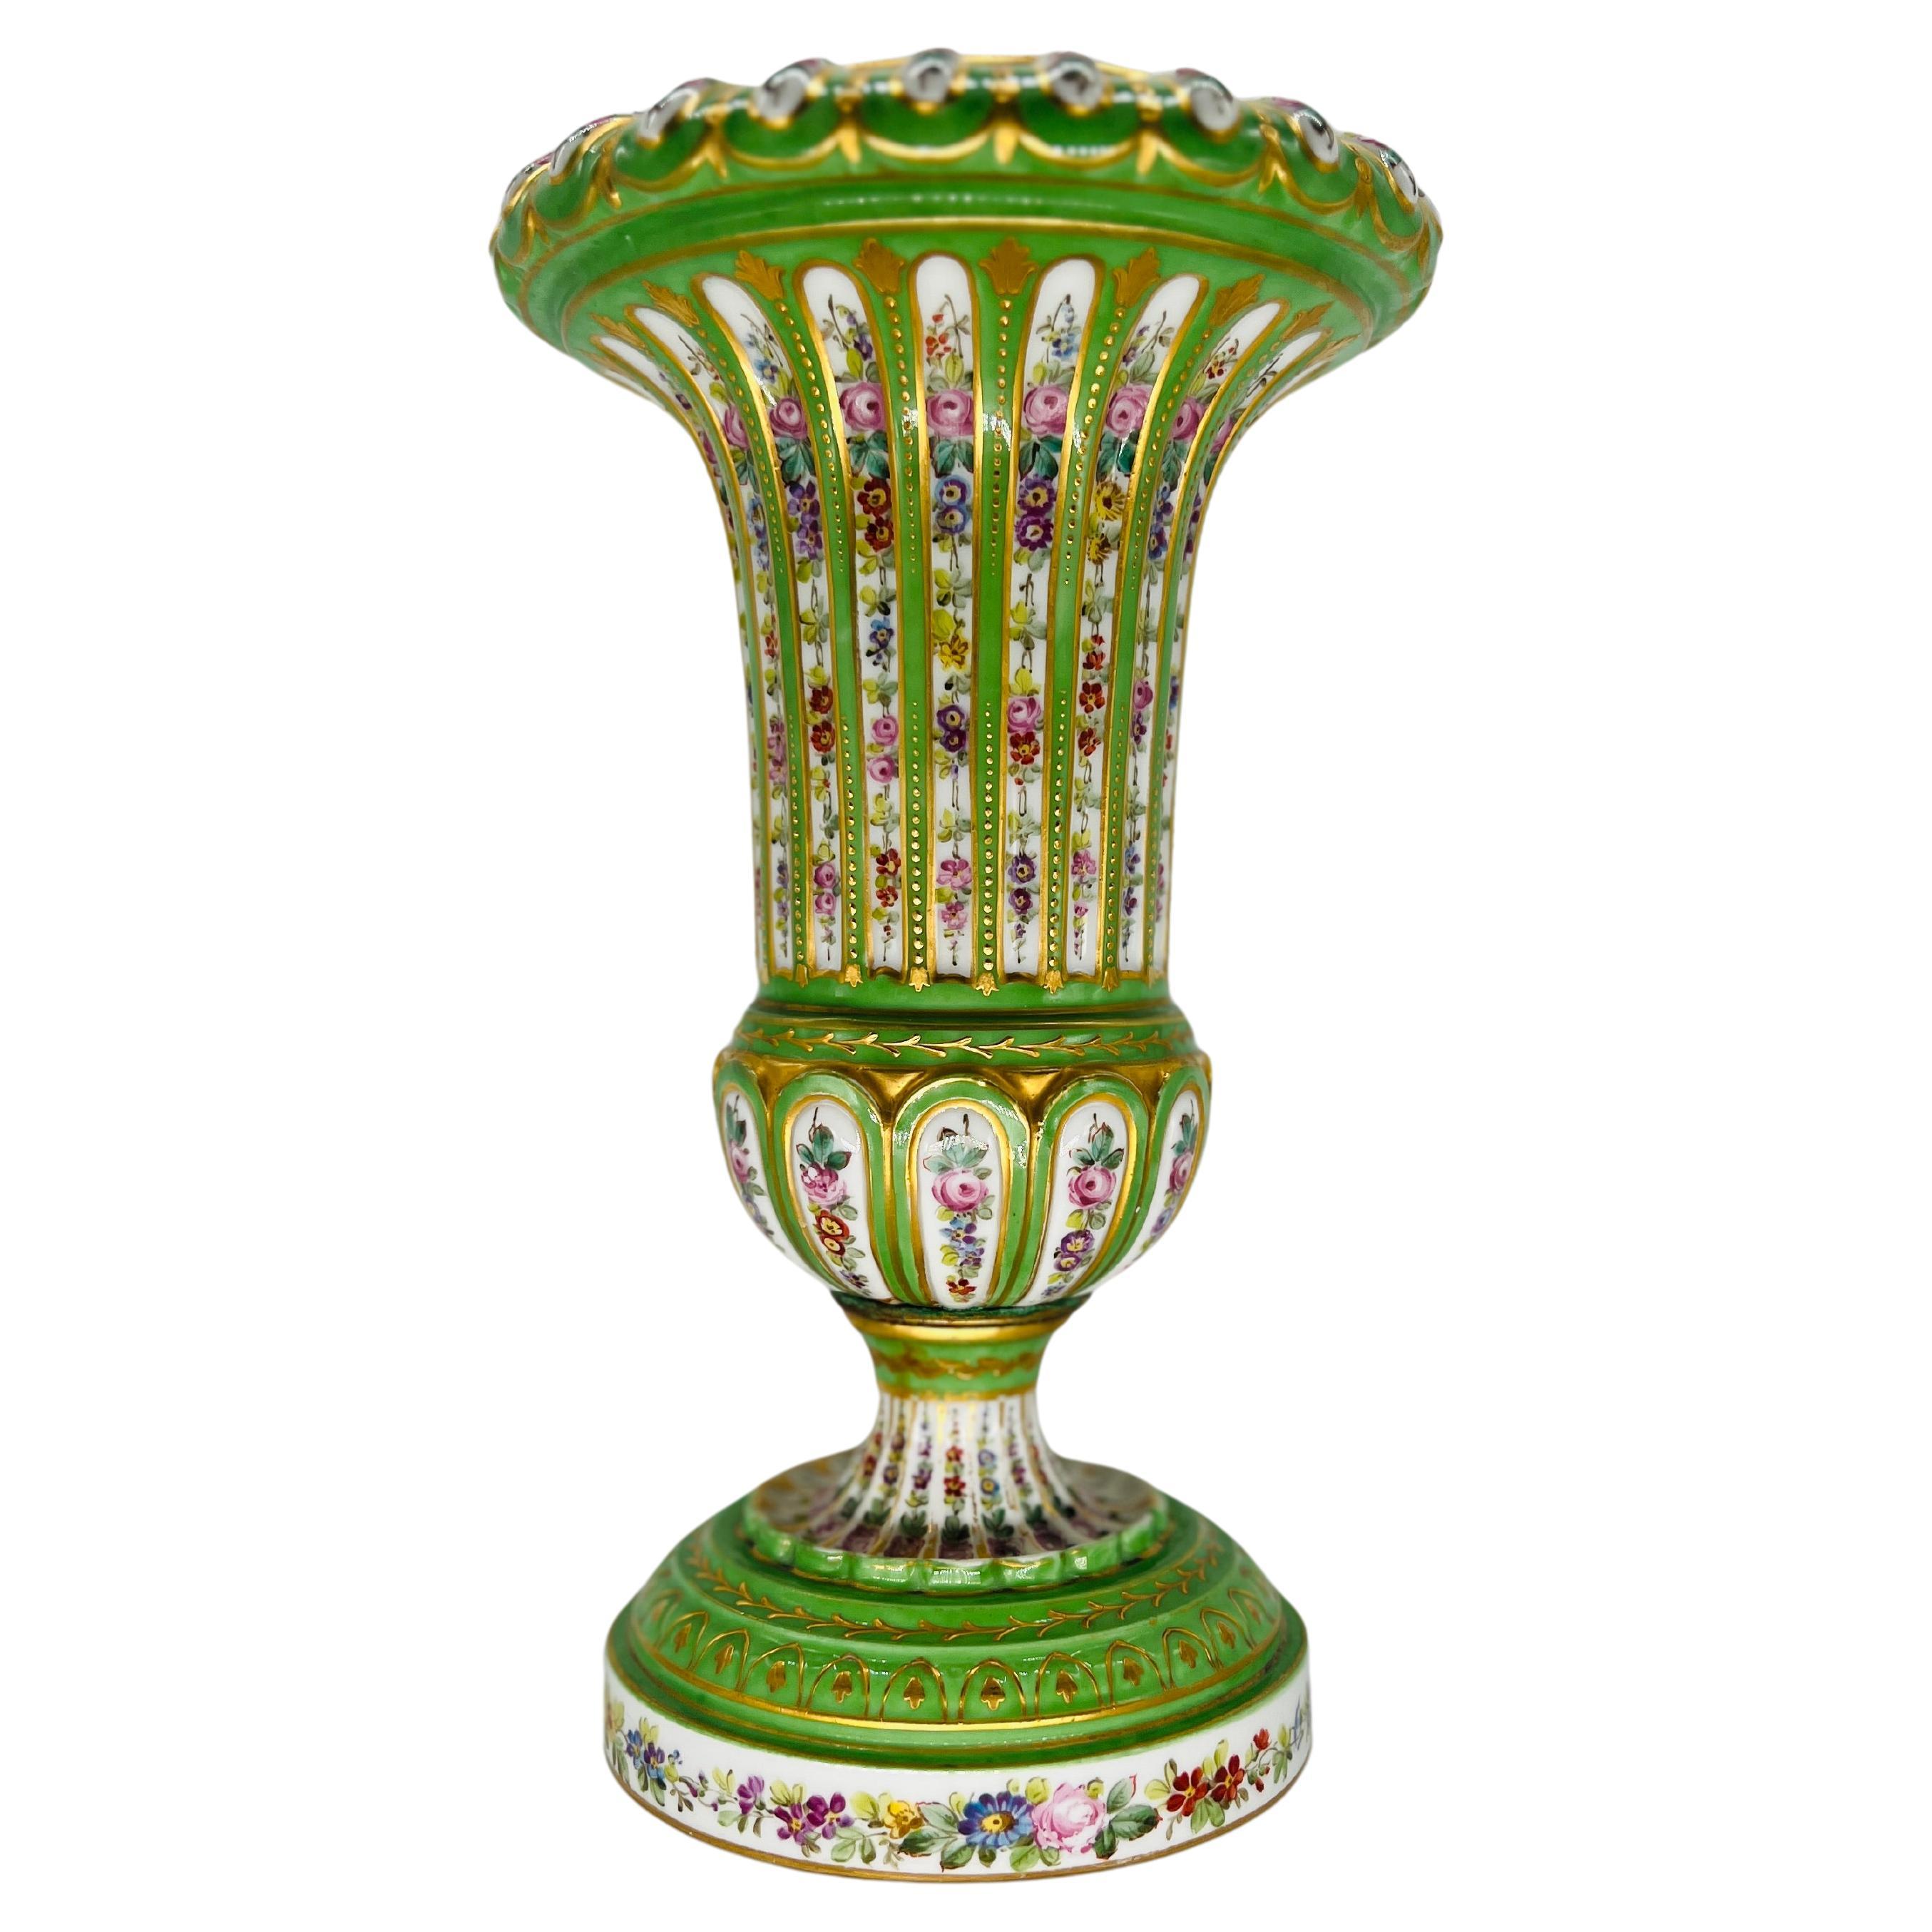 Antique French Sevres Porcelain Floral Enamel Decorated Vase C. 1770 For Sale